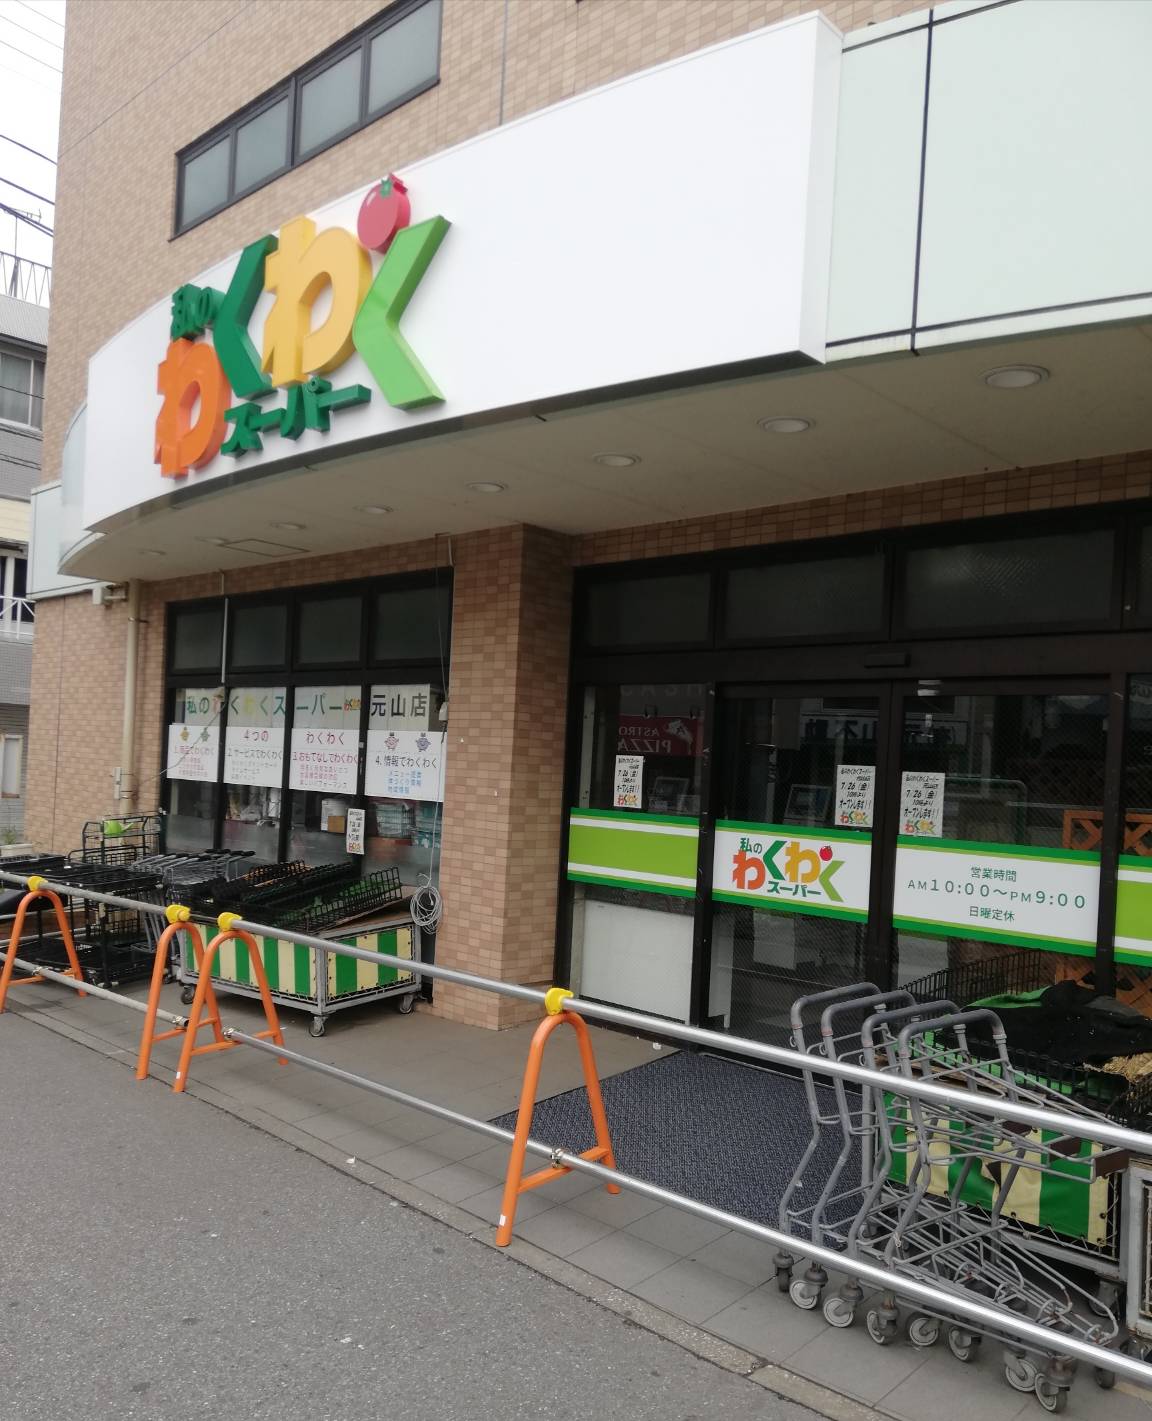 私のわくわくスーパーが元山駅ビルに7月26日開店 現地の様子も記載 おっ母さん跡地 松戸ロード 松戸の地域情報